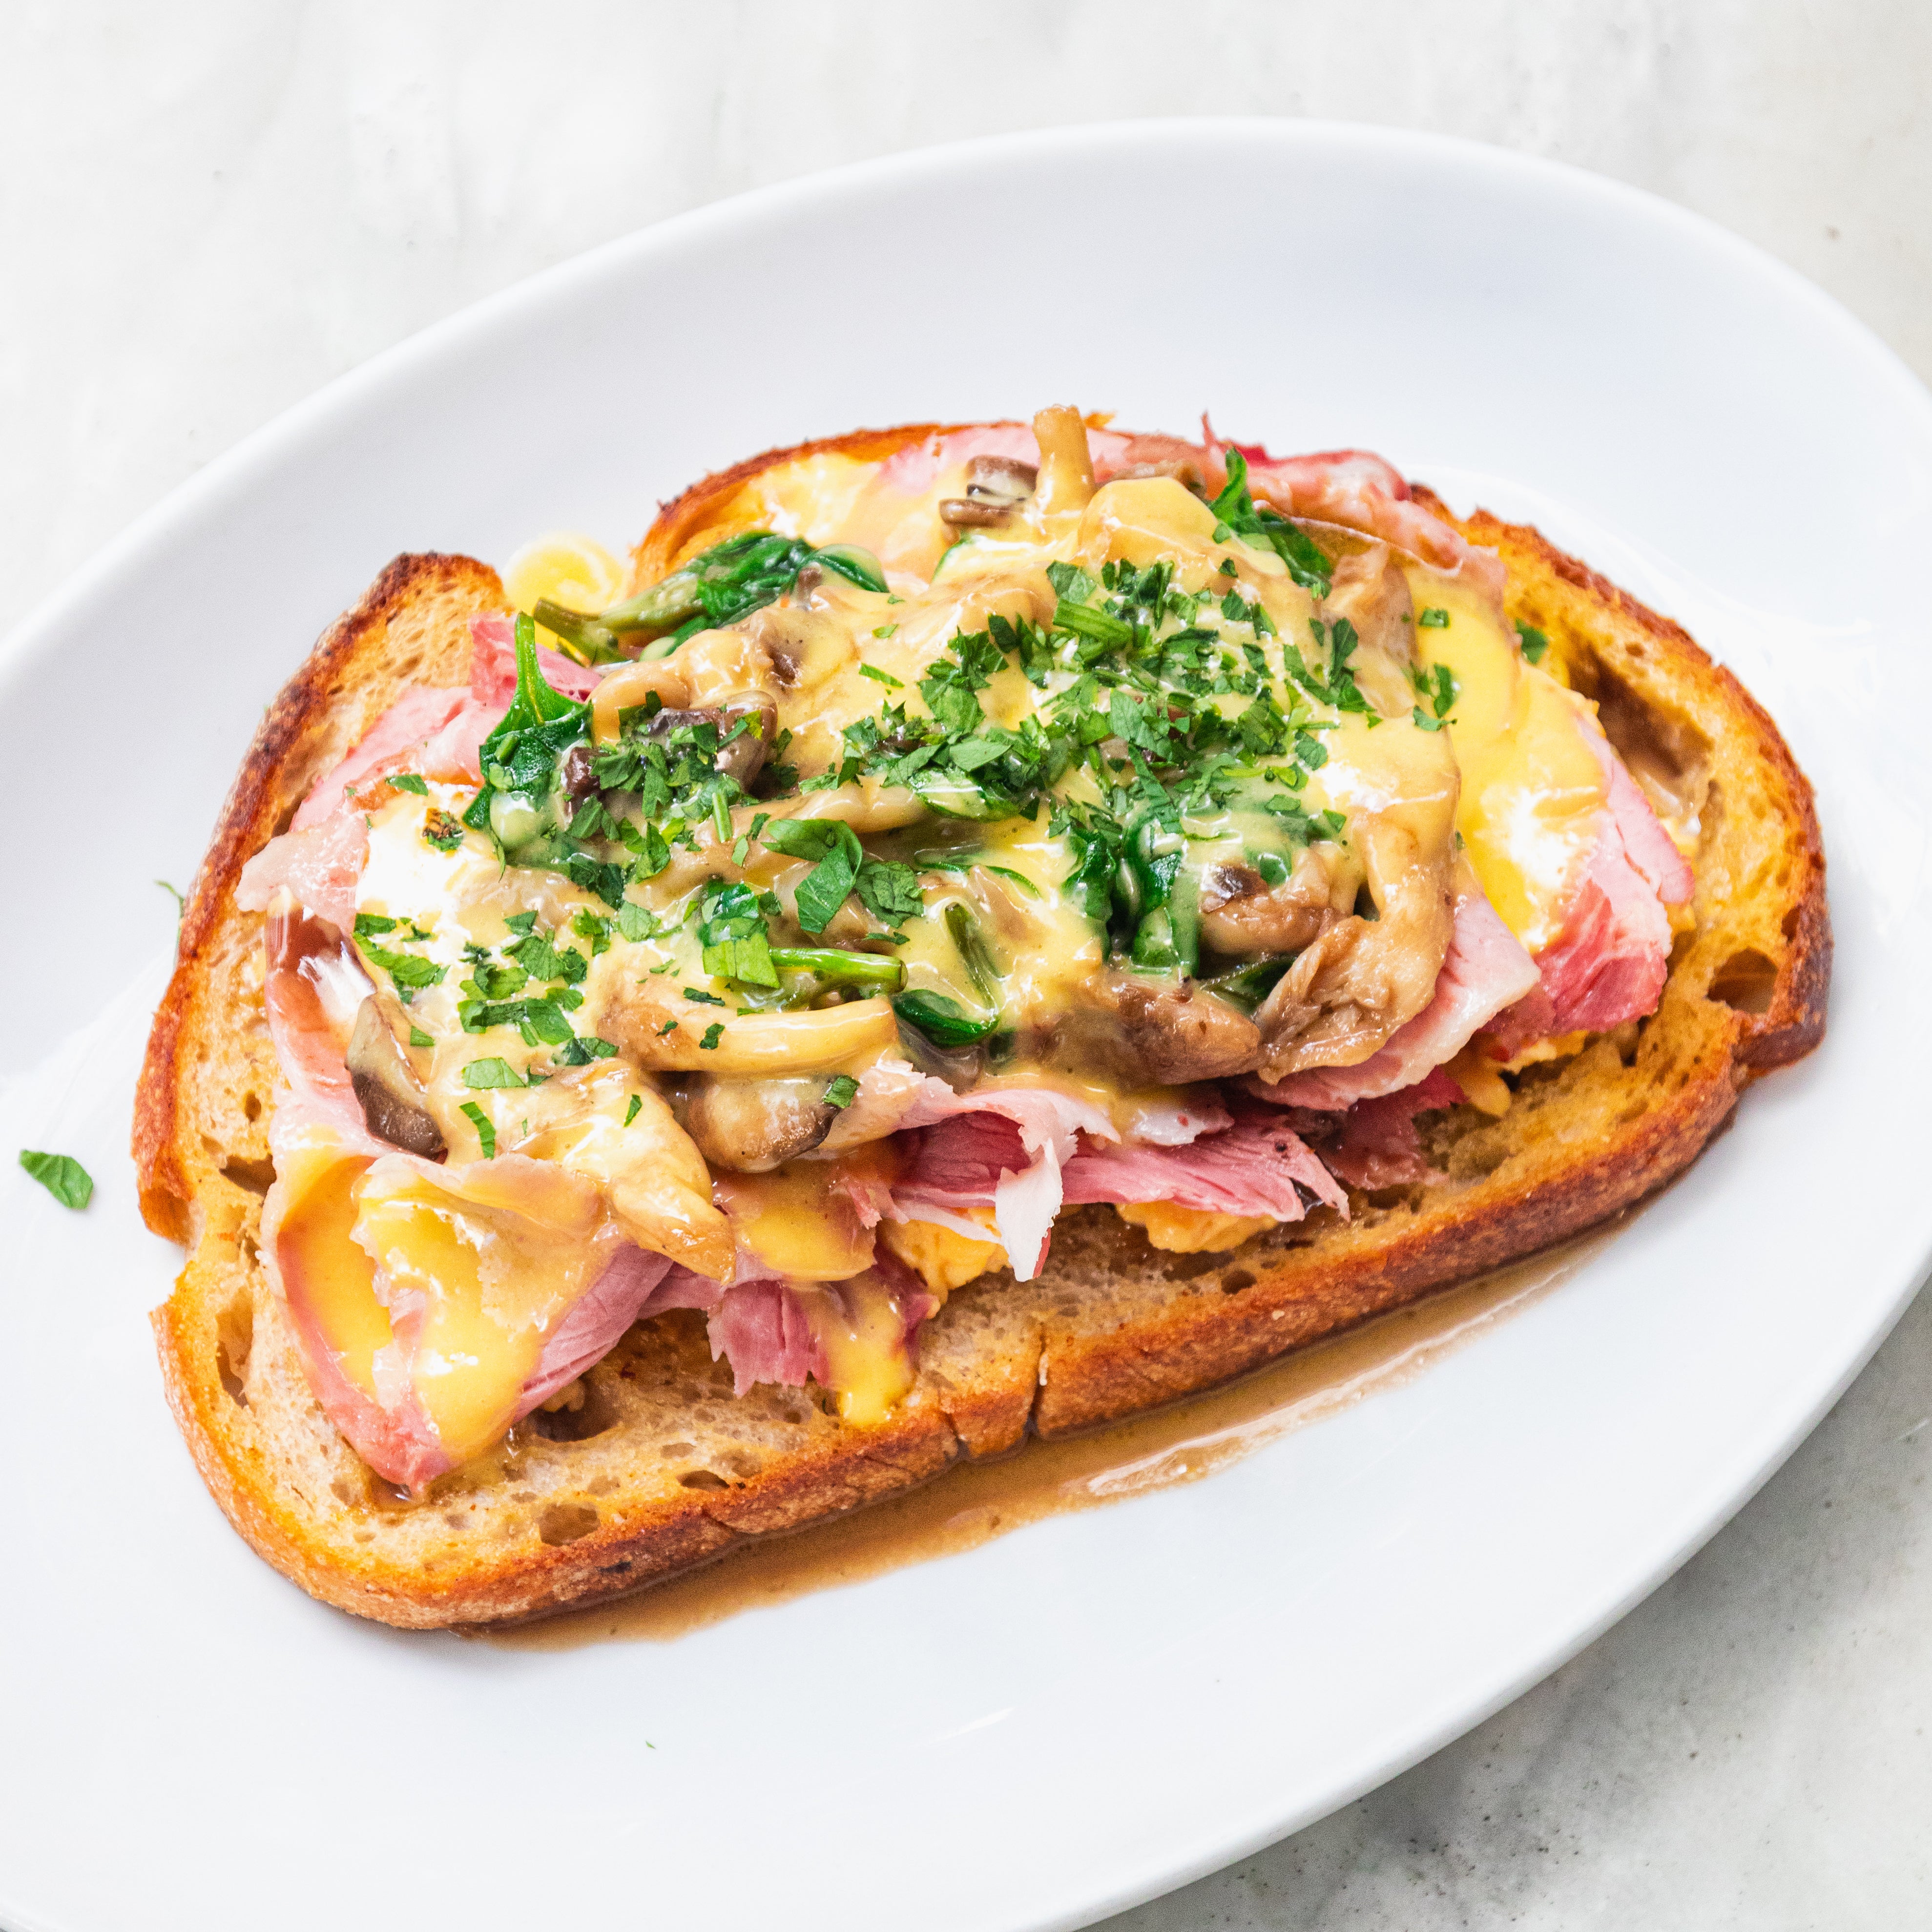 Ham, Mushrooms, and Eggs on Toast